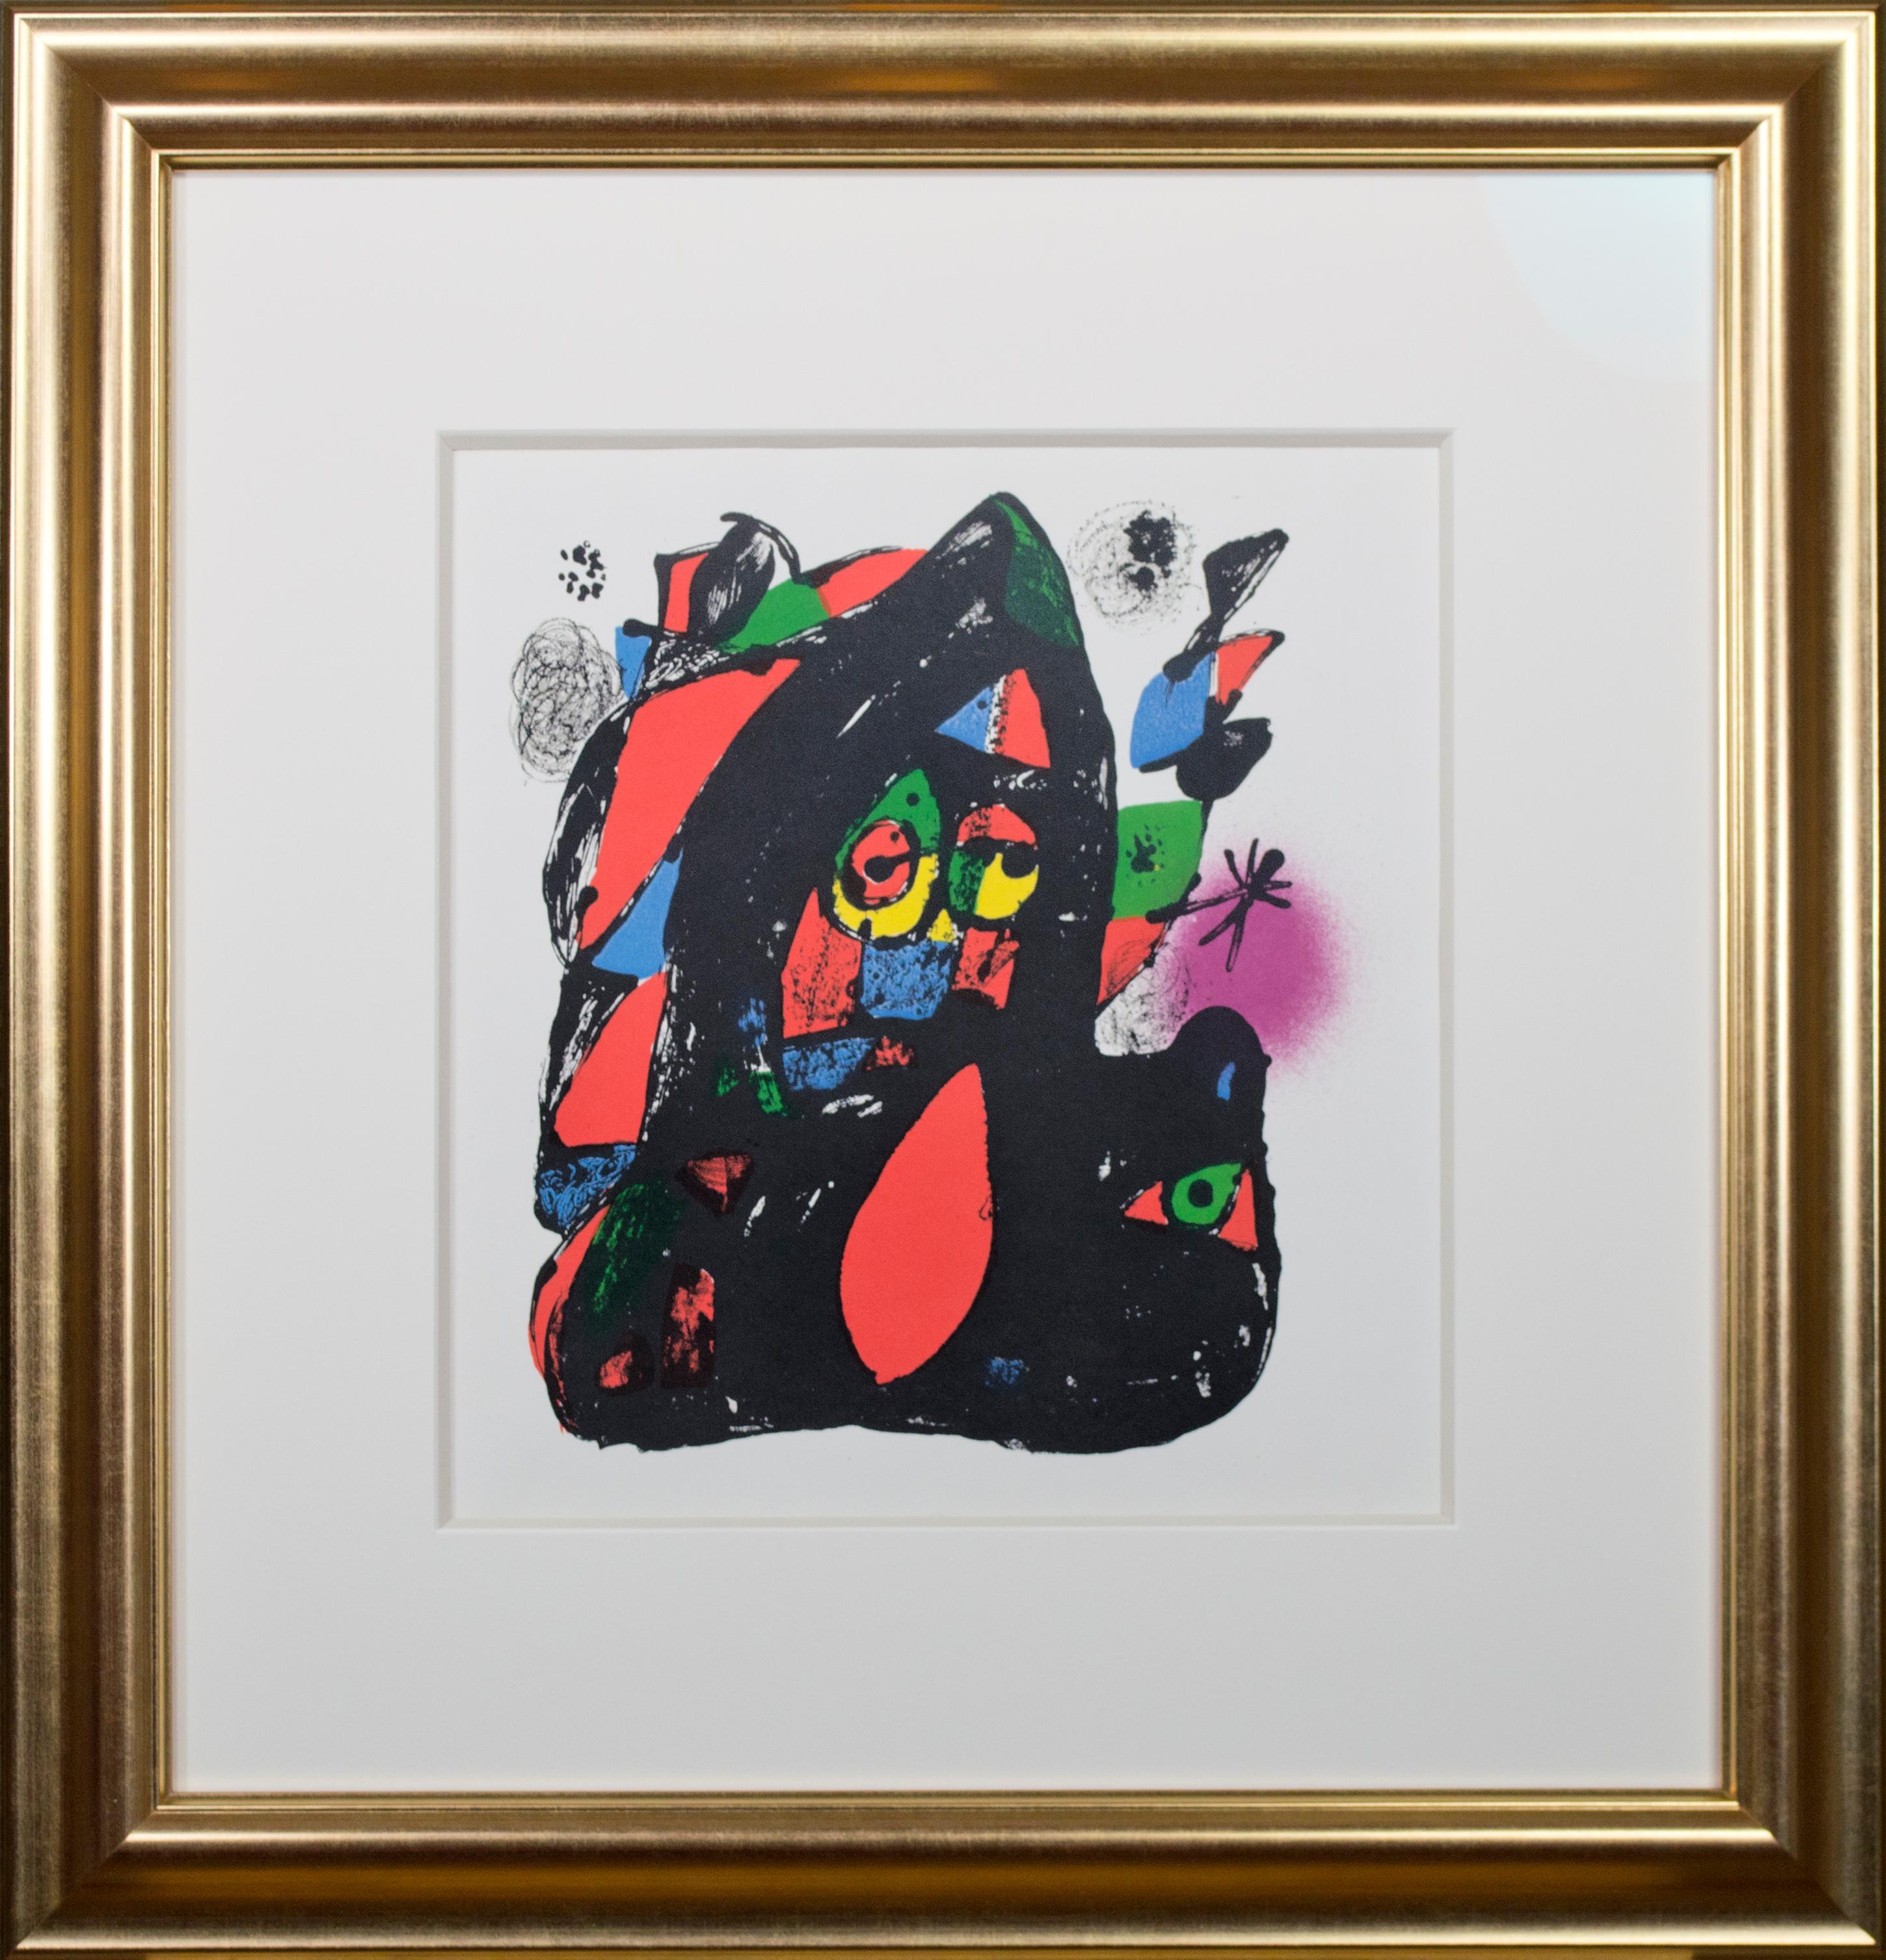 Diese Original-Lithografie ist eine von sechs, die Joan Miró speziell für den vierten Band des Katalogs seiner Lithografien angefertigt hat. Sie sind hervorragende Beispiele für sein späteres Schaffen und zeichnen sich durch seine charakteristischen